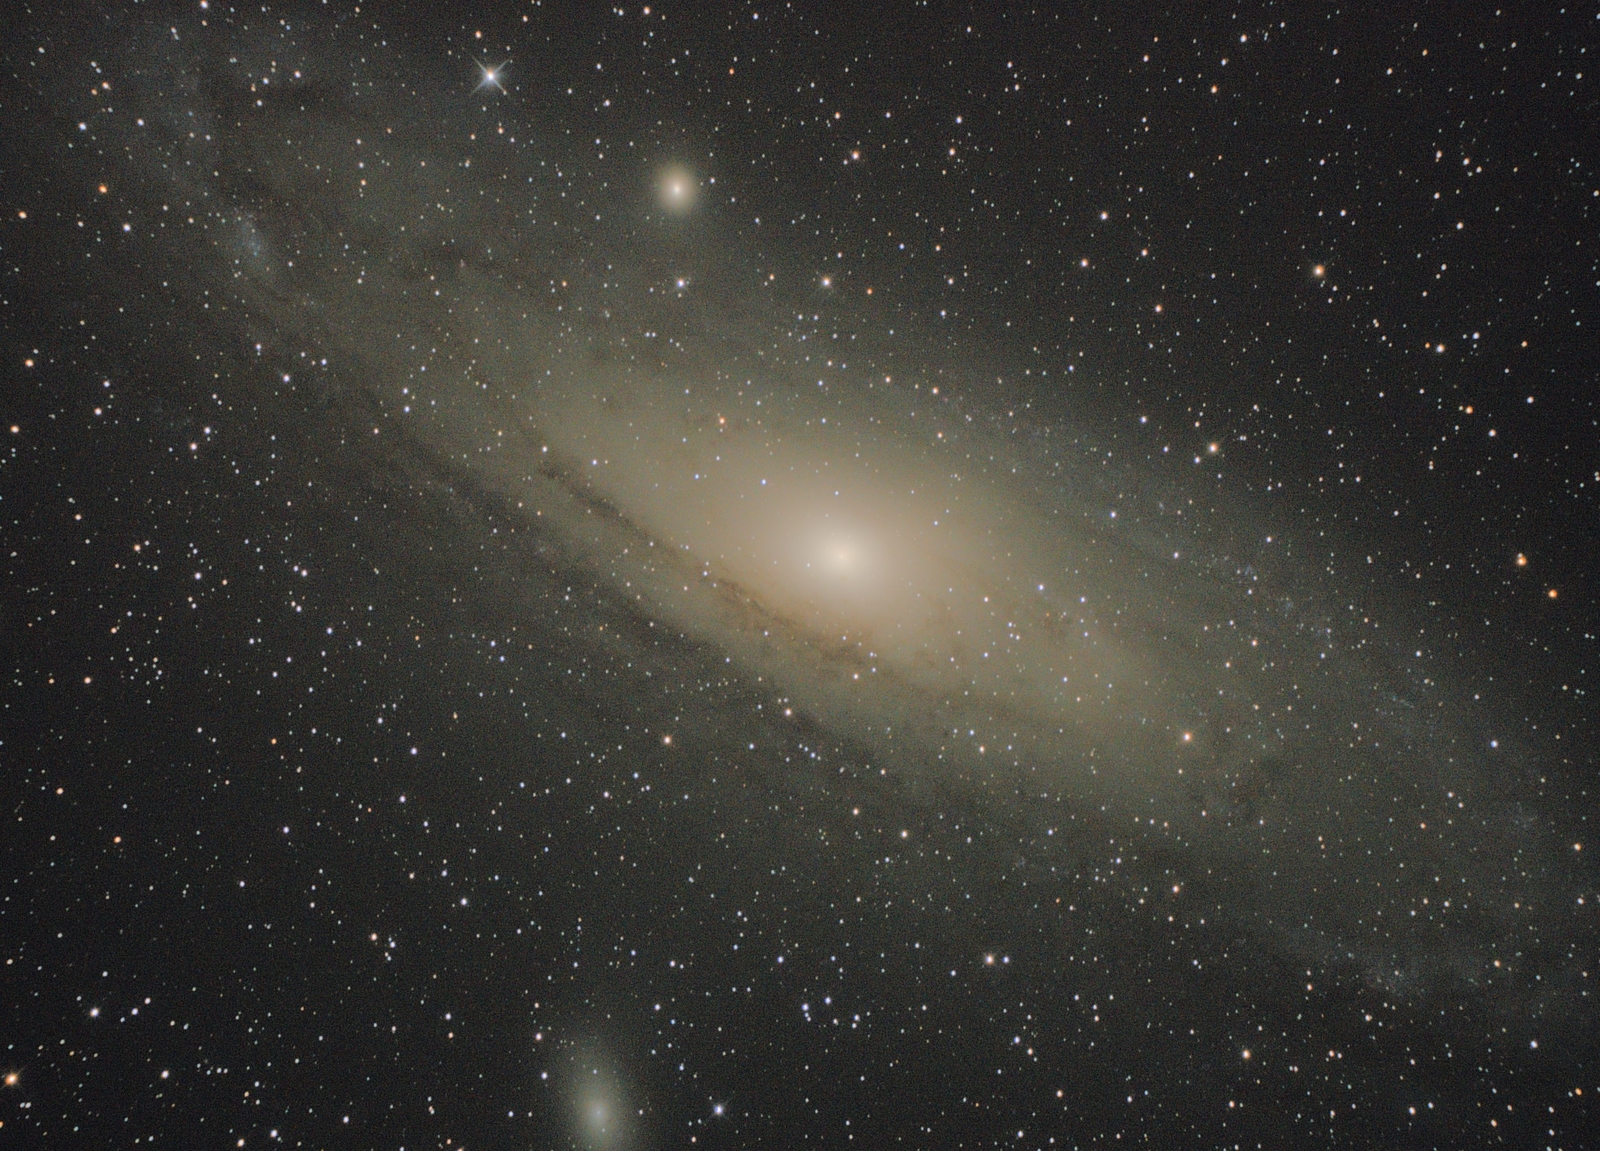 2018-09-01 Andromeda Galaxy (M31) (WIP)